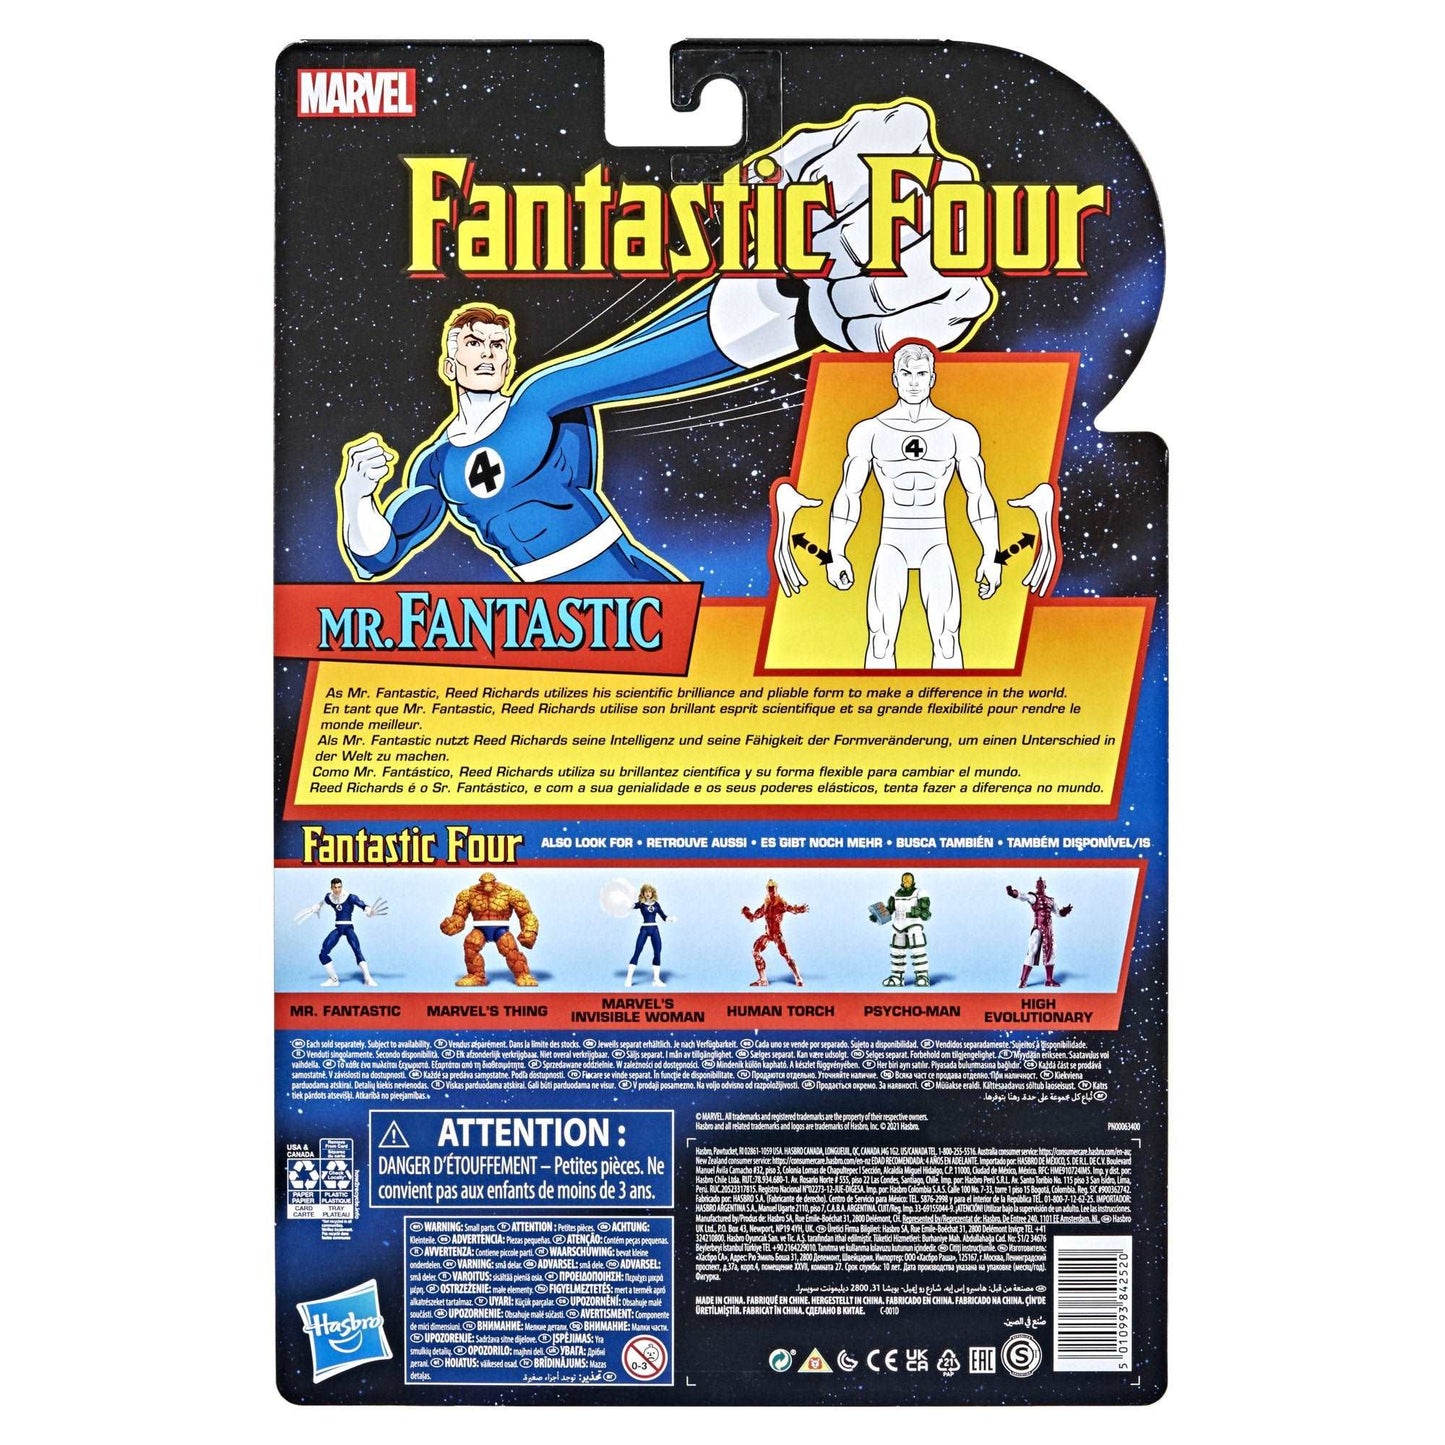 Marvel Legends Series Retro Mr. Fantastic back of packaging